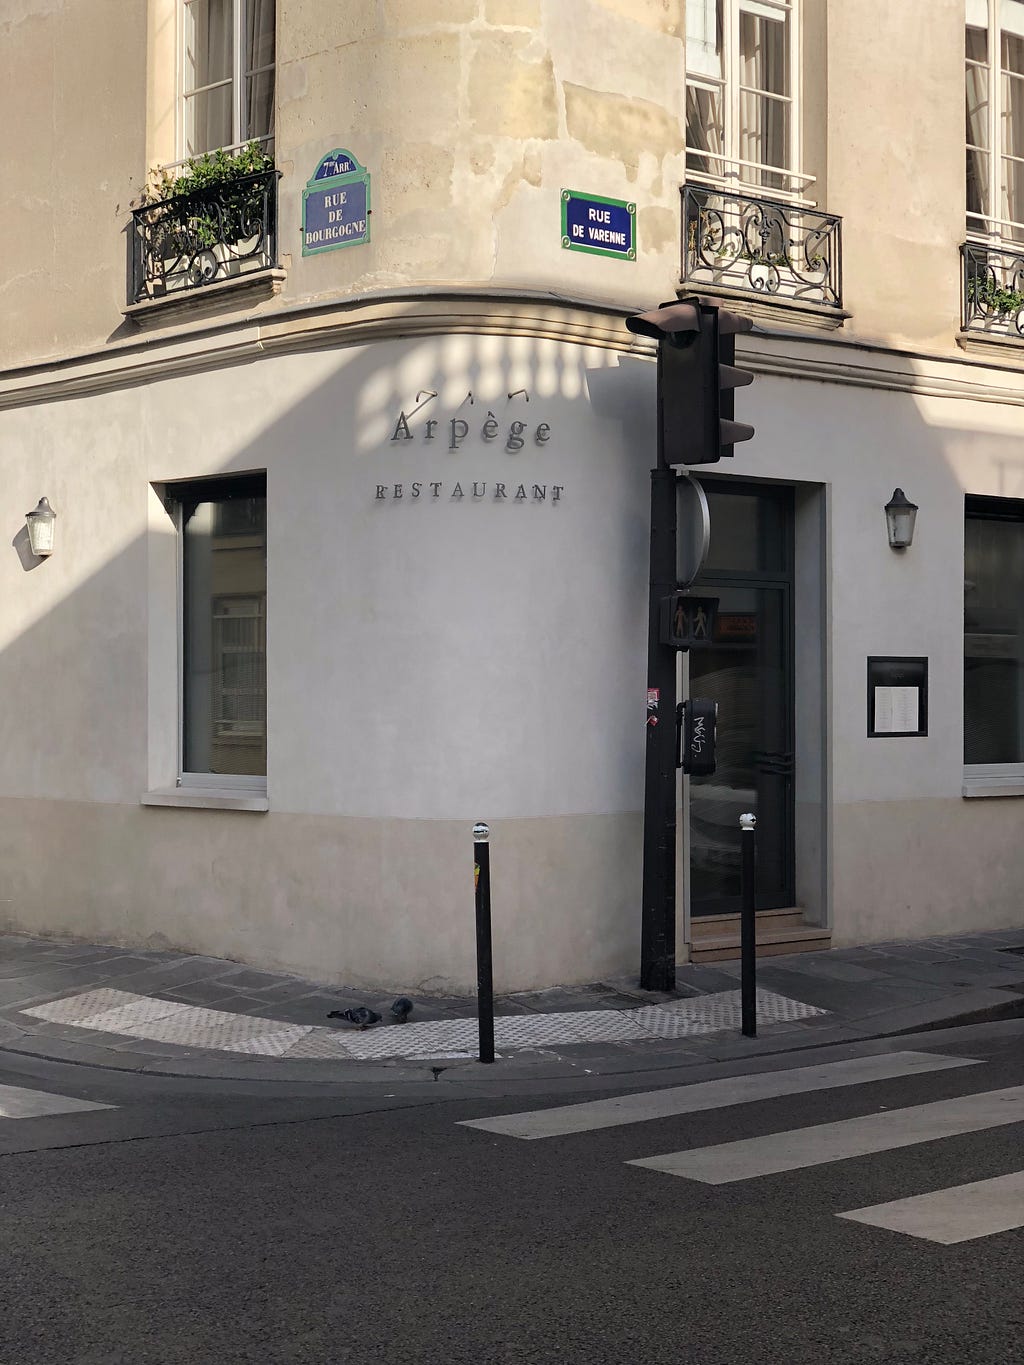 Arpège, 3 Michelin stars restaurant, Paris